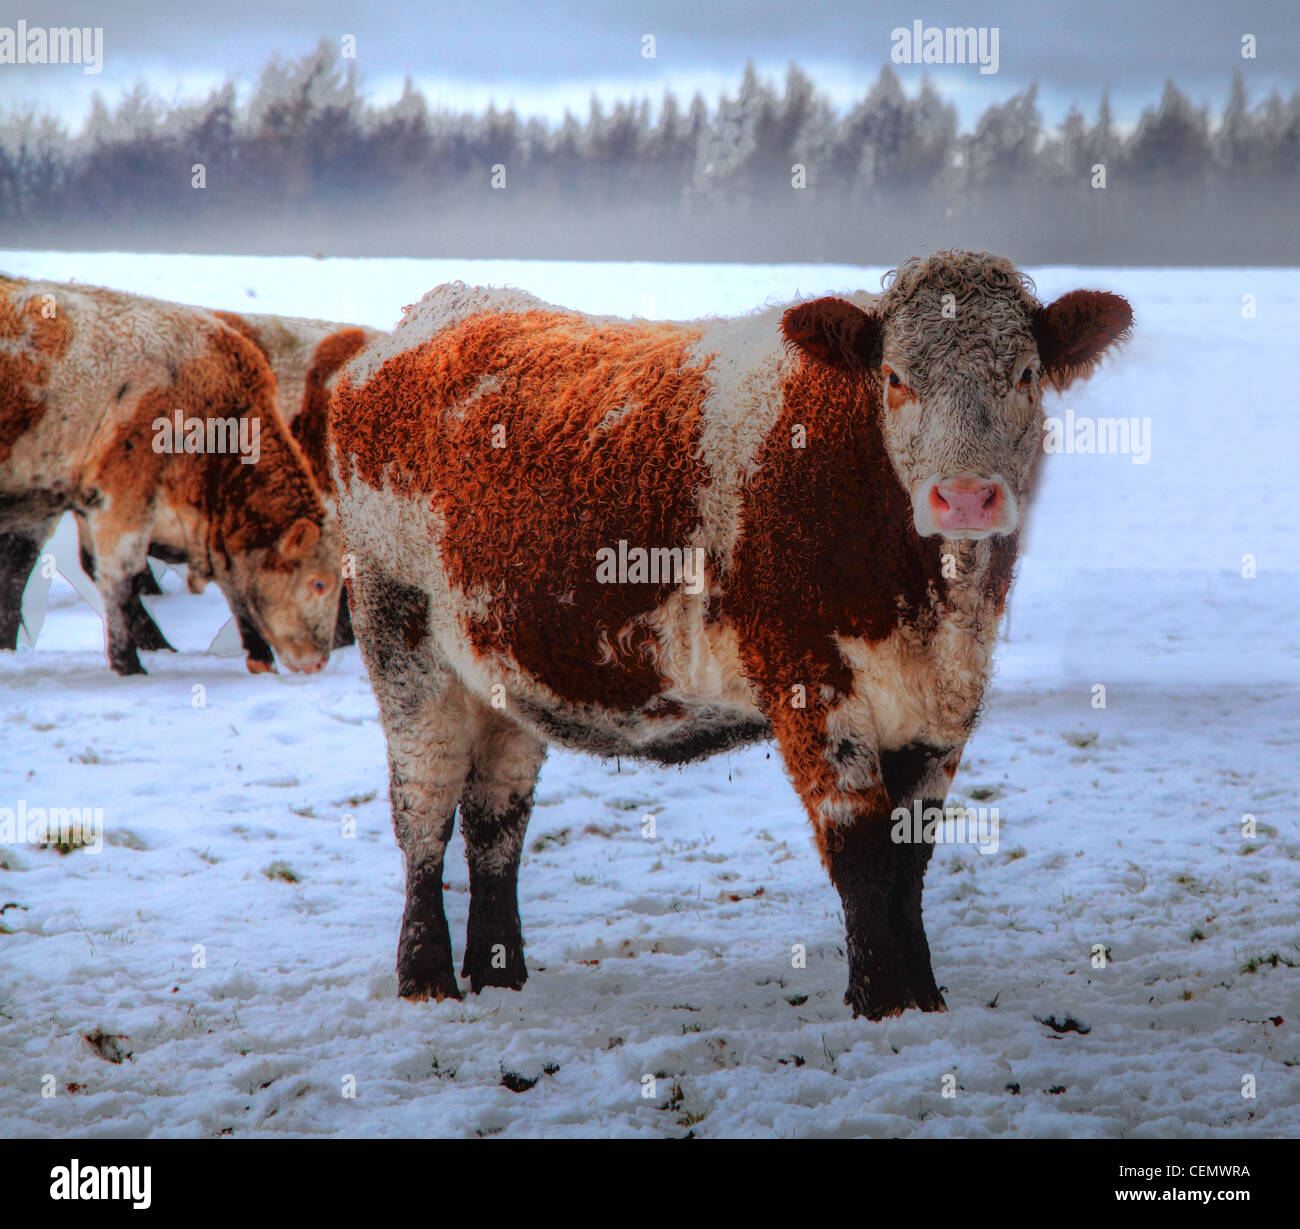 Vache Highland brun et blanc près de Dalkeith Palace, Midlothian, dans la glace, la neige, l'hiver rigoureux, Ecosse, Royaume-Uni Banque D'Images